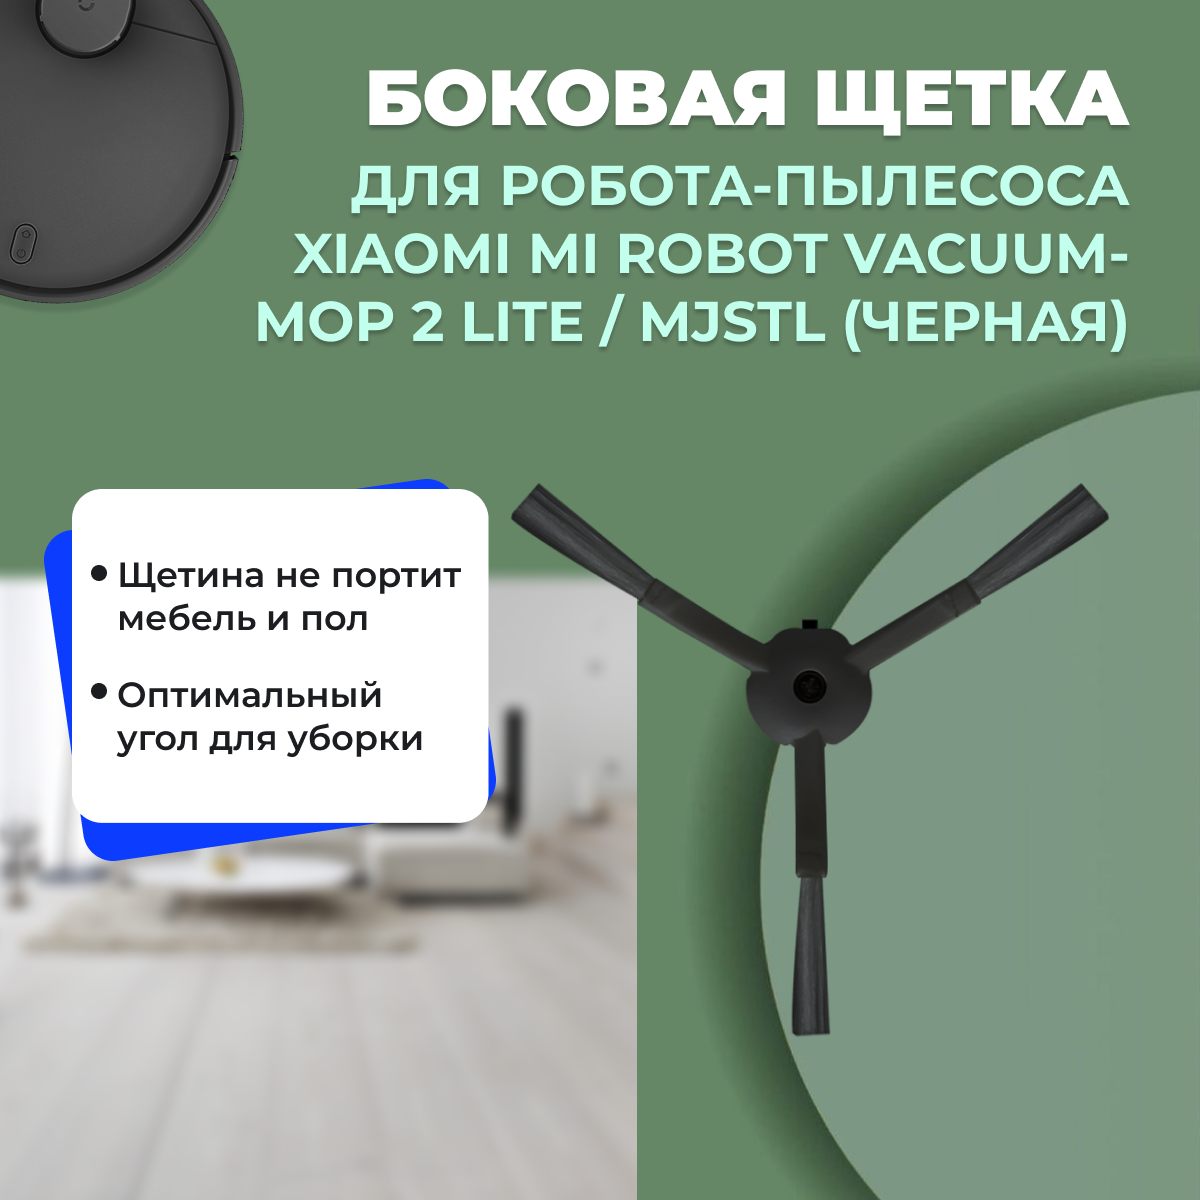 Боковая щетка для робота-пылесоса Xiaomi Mi Robot Vacuum-Mop 2 Lite, черная 558184